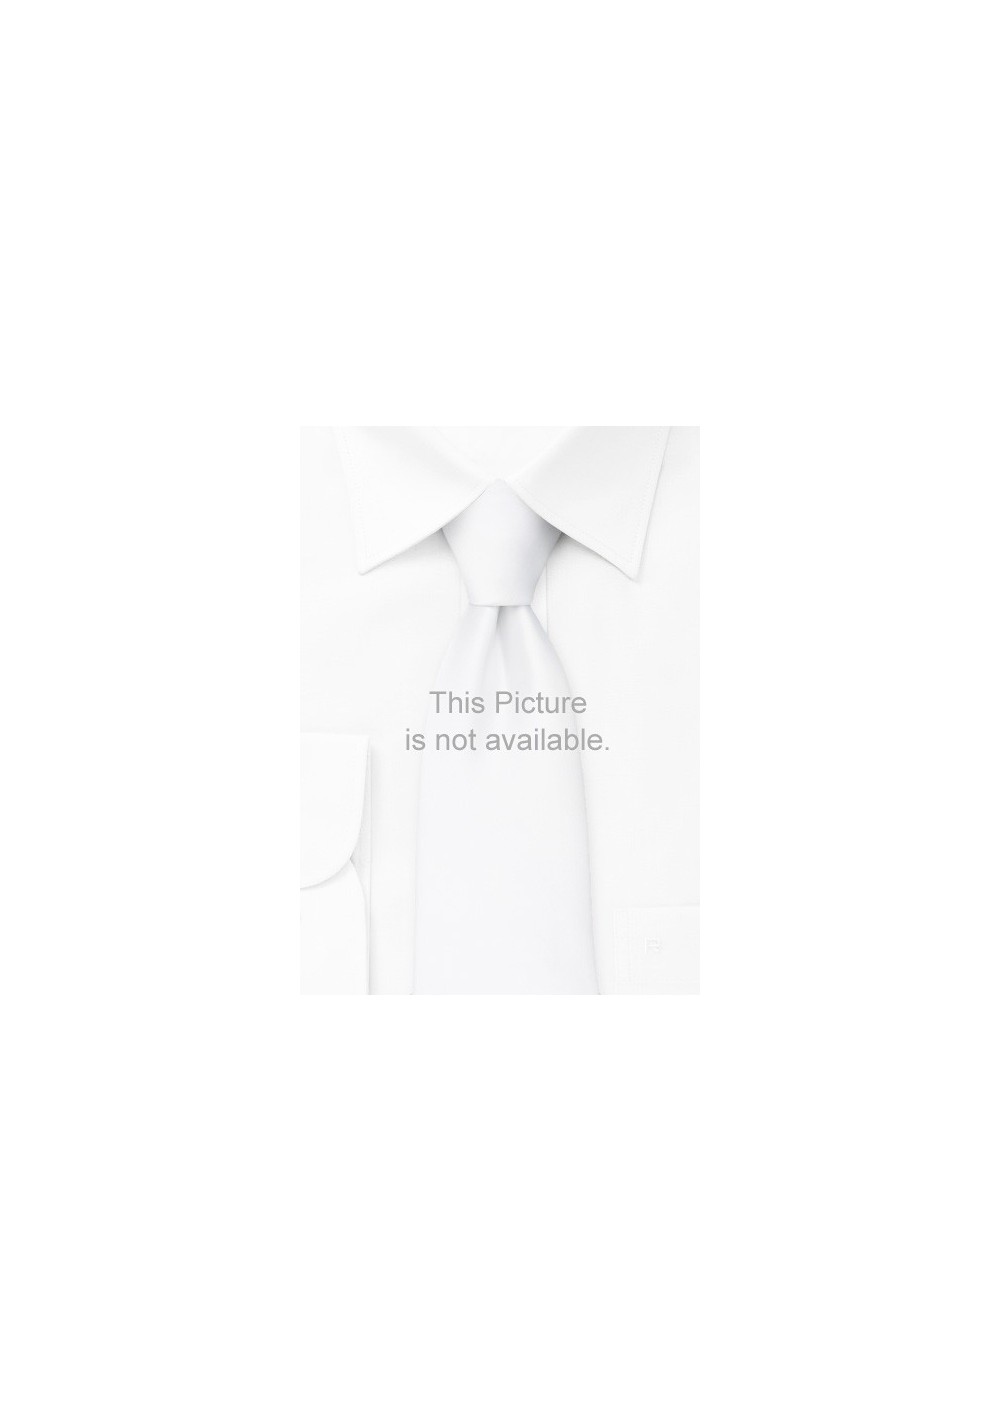 Solid color beige silk tie